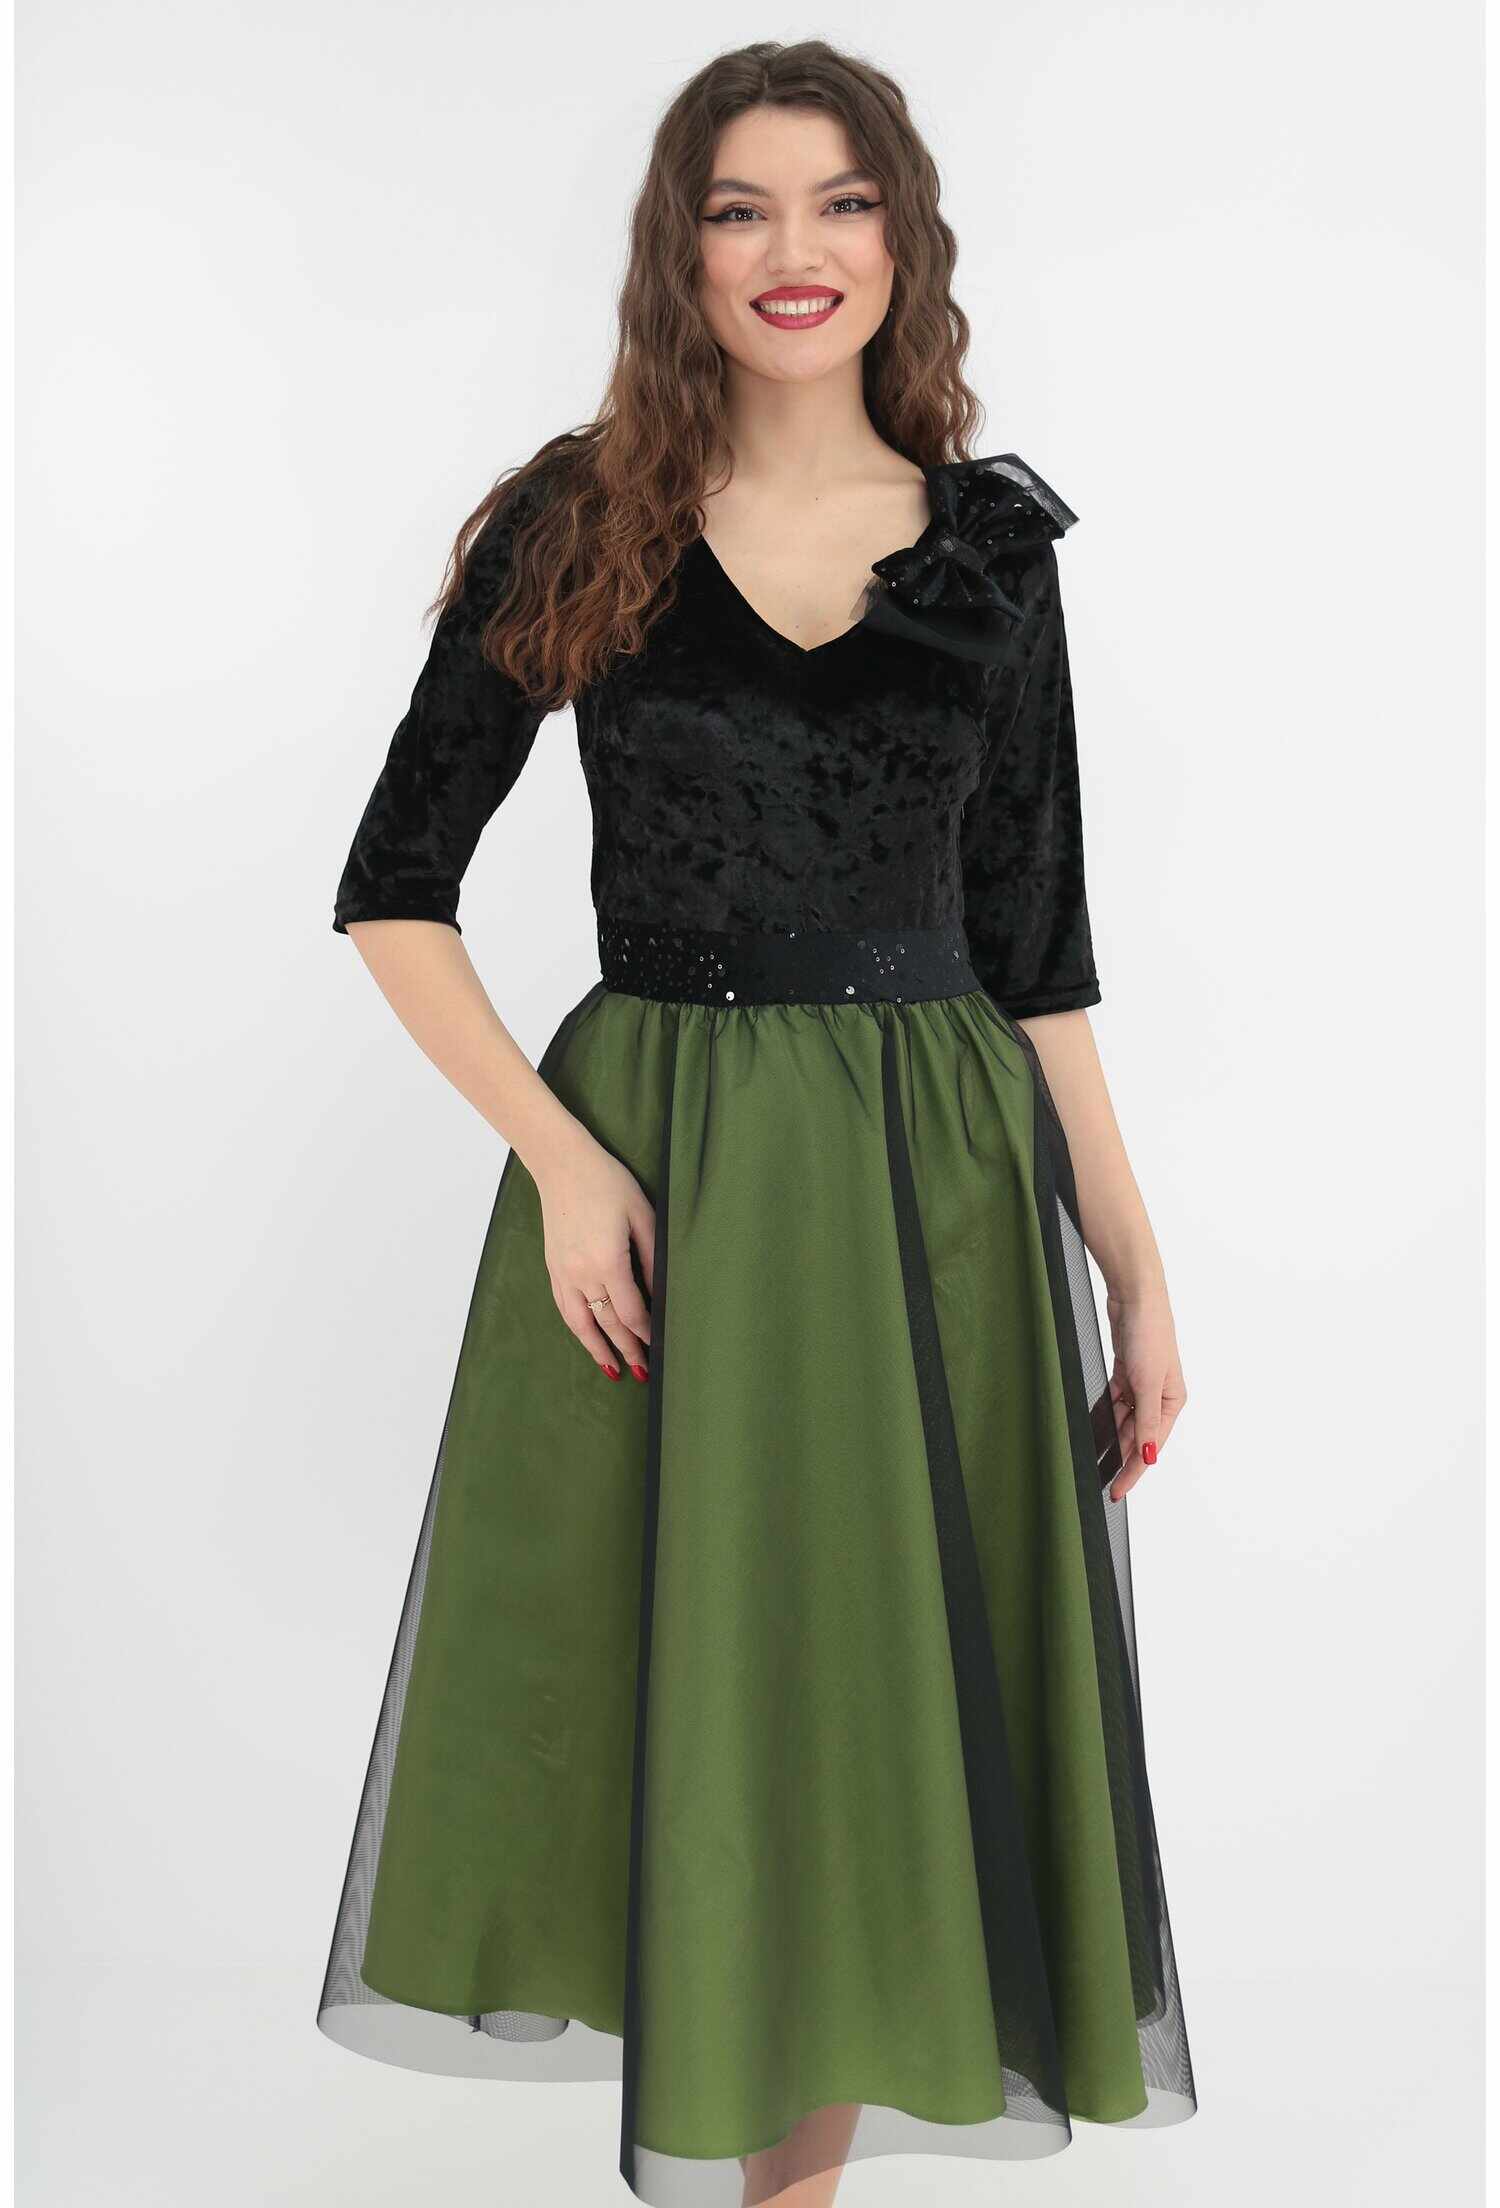 Rochie de ocazie din catifea neagra si tafta verde